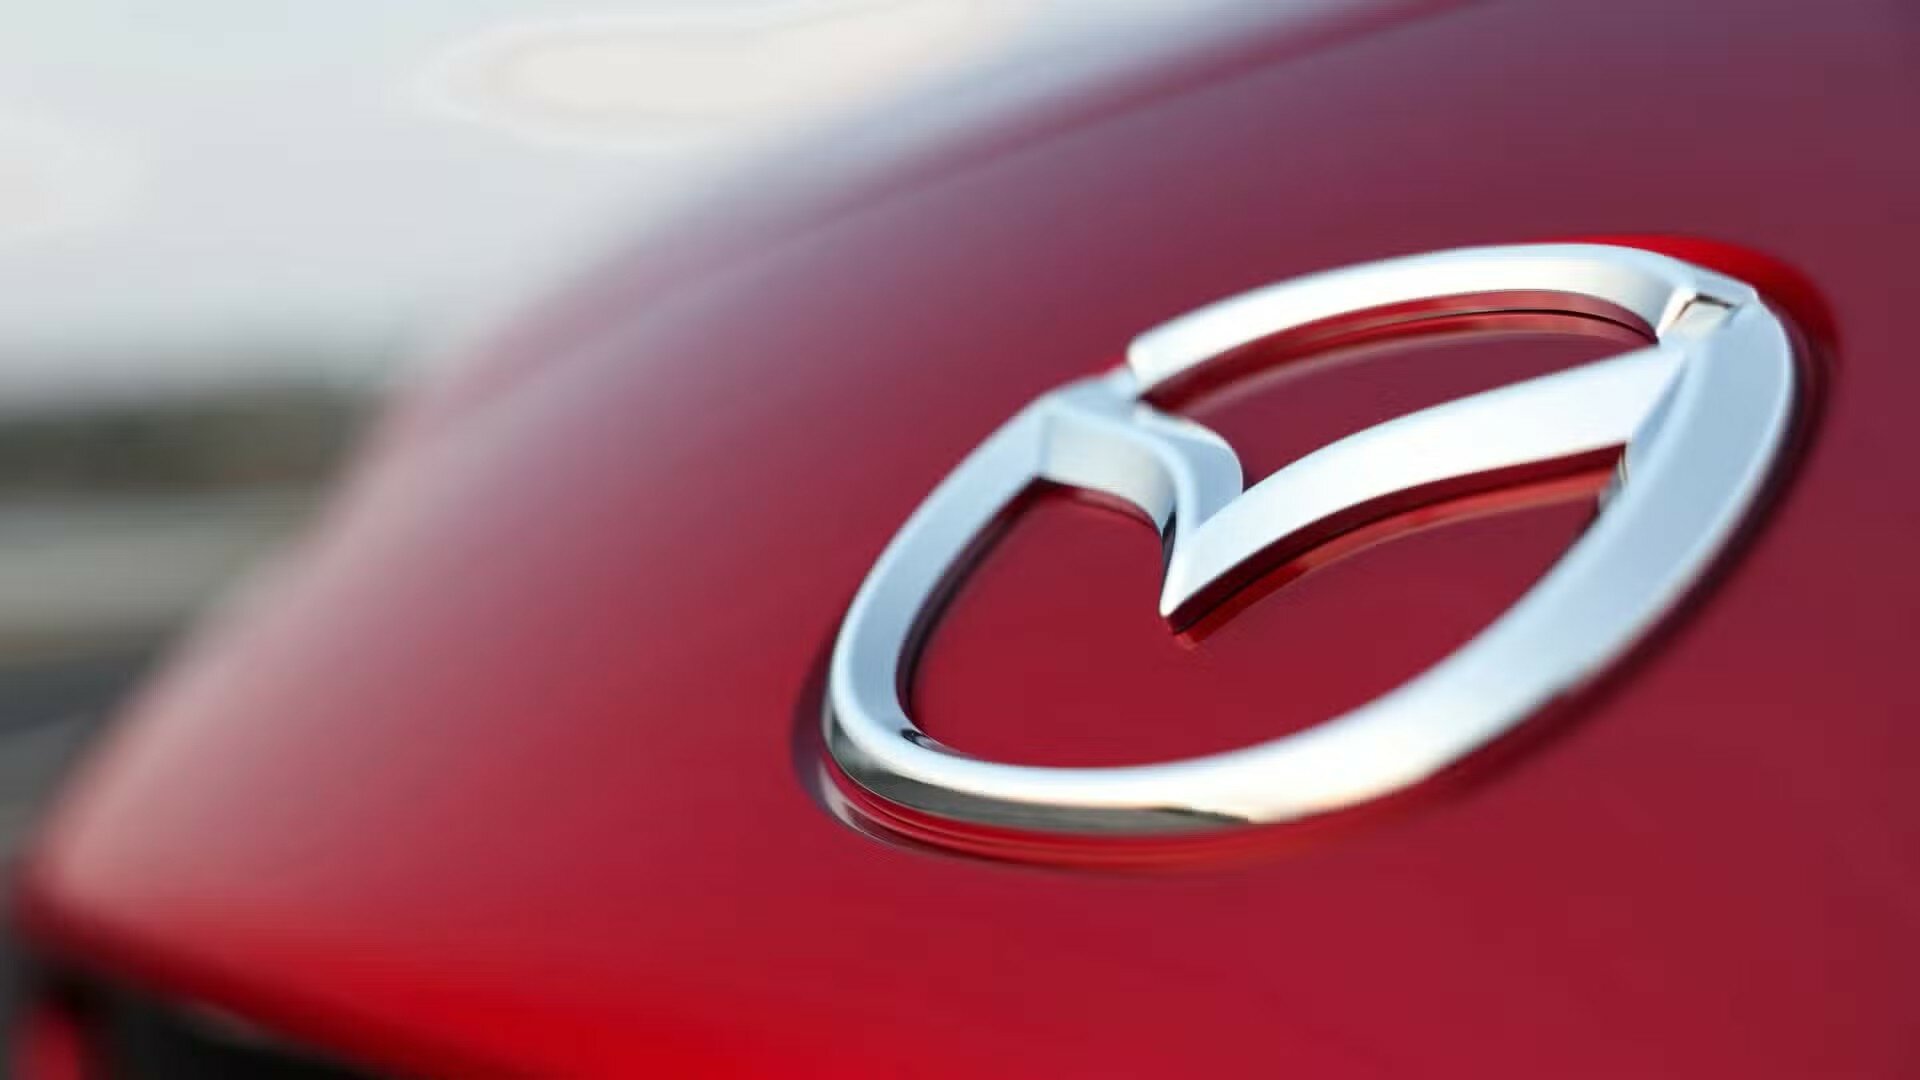 Mazda меняет логотип. Крылья остались, но рисунок стал безликим